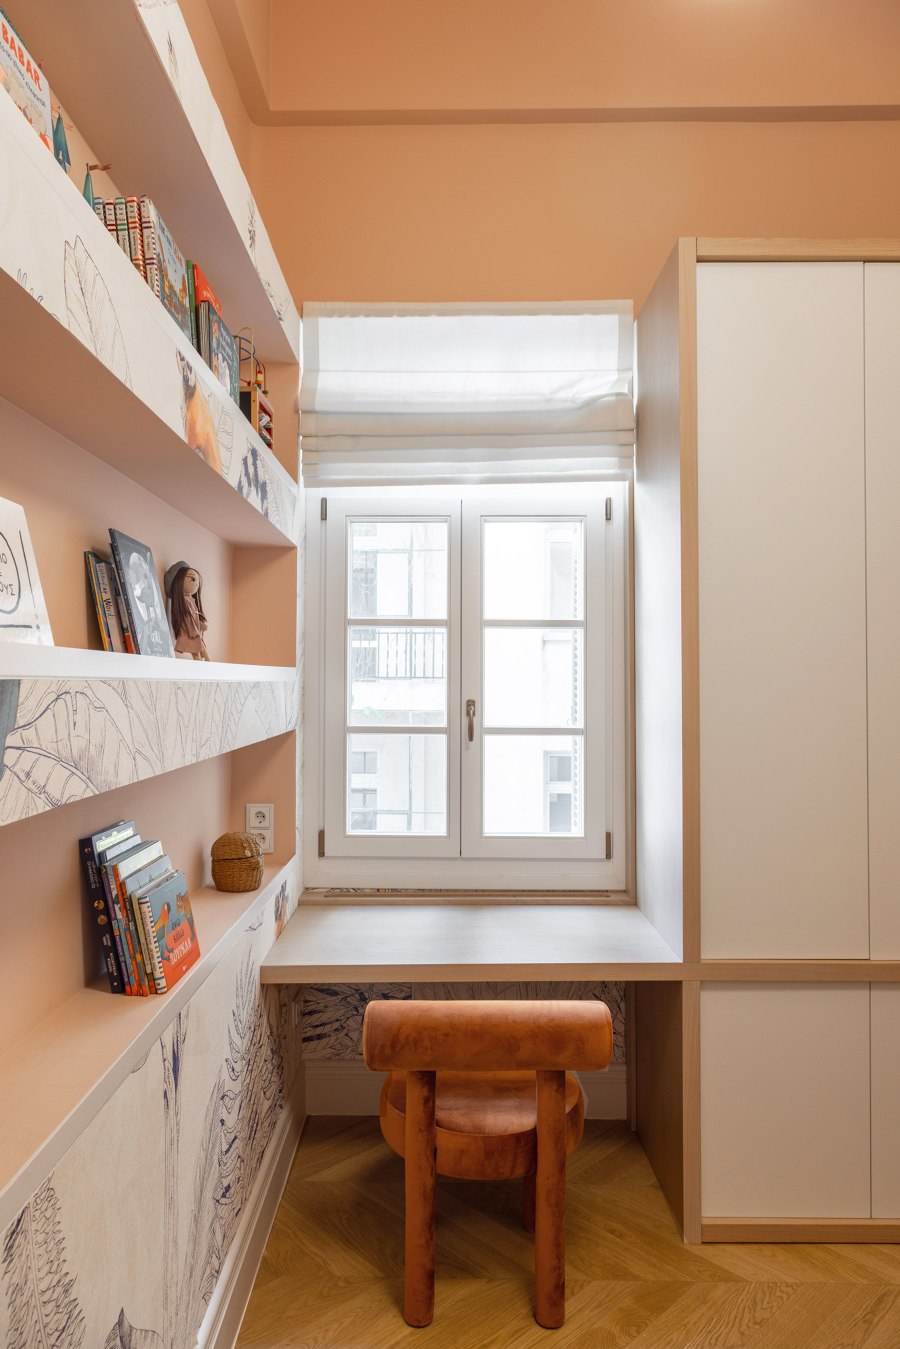 ARI Historic apartment redesign von FLUO | Wohnräume